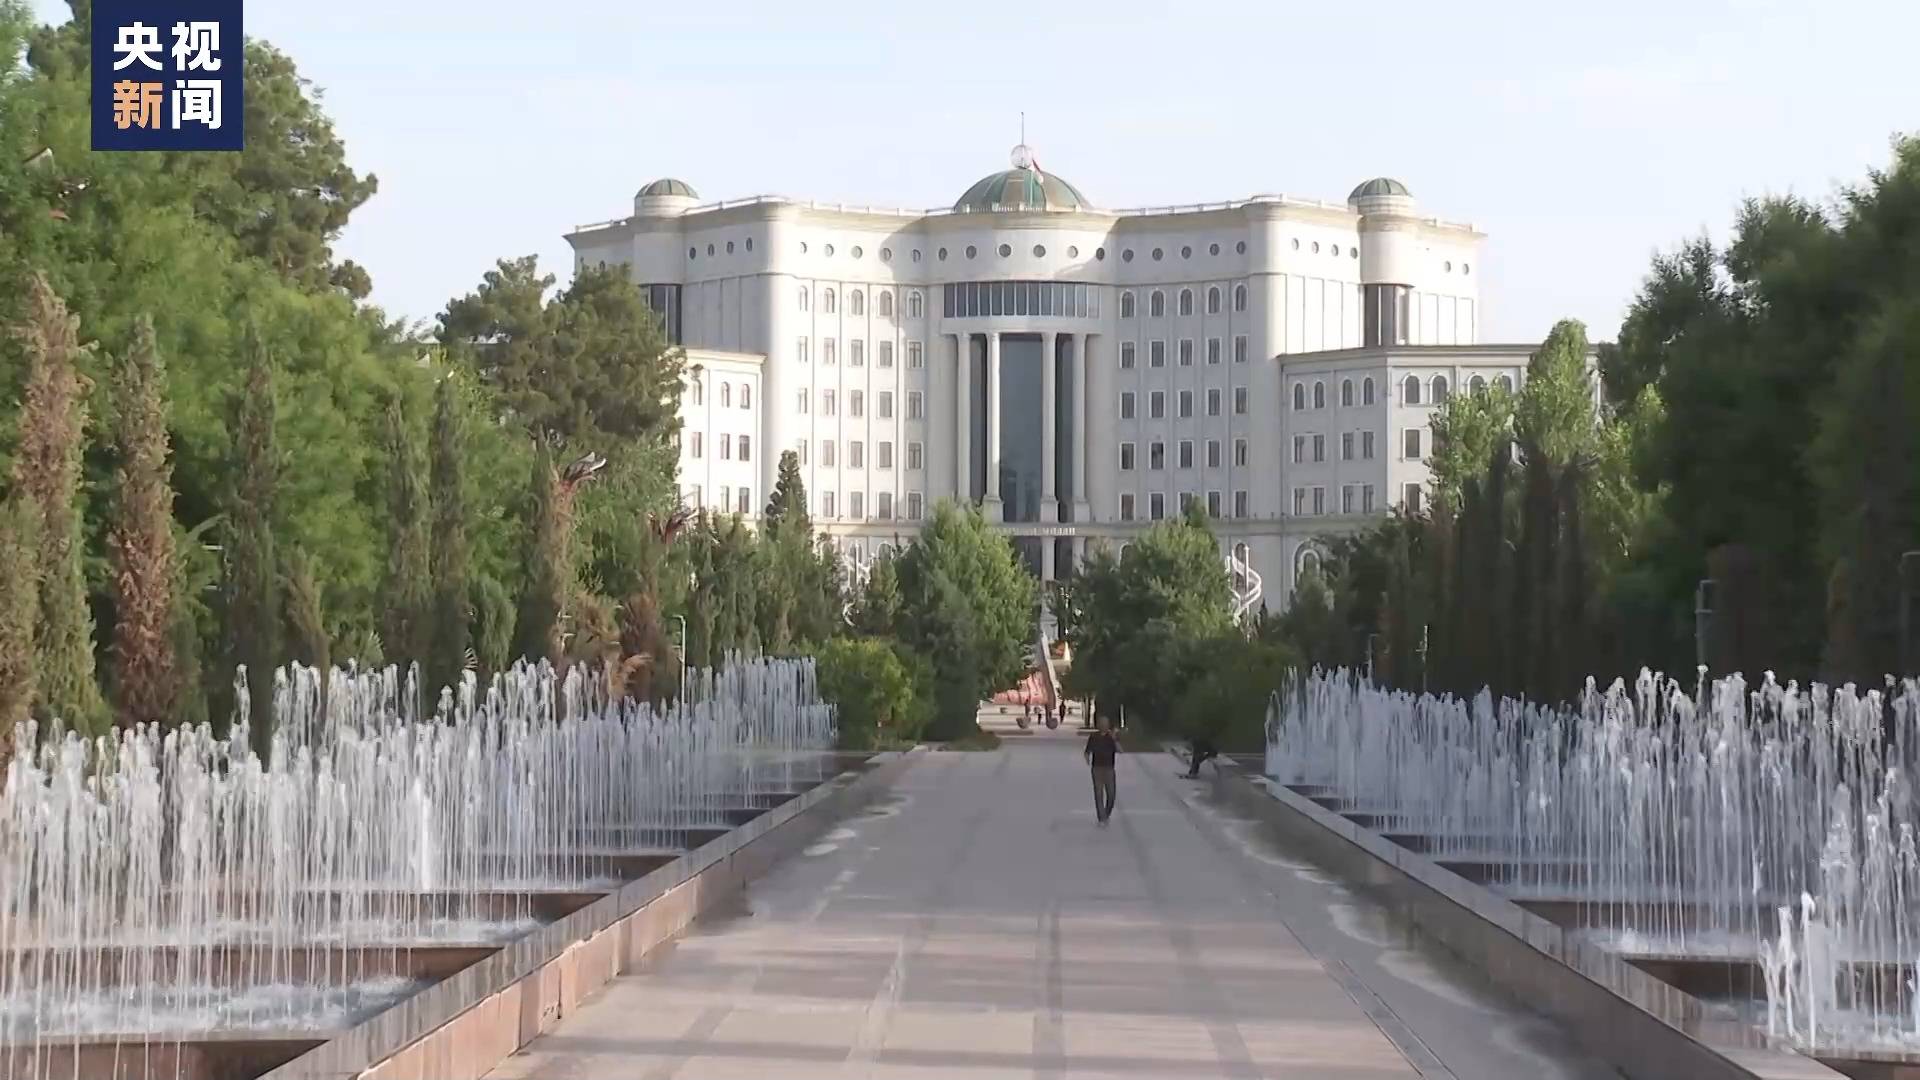 塔吉克斯坦各界人士 期待习主席到访为两国深化合作注入新动力